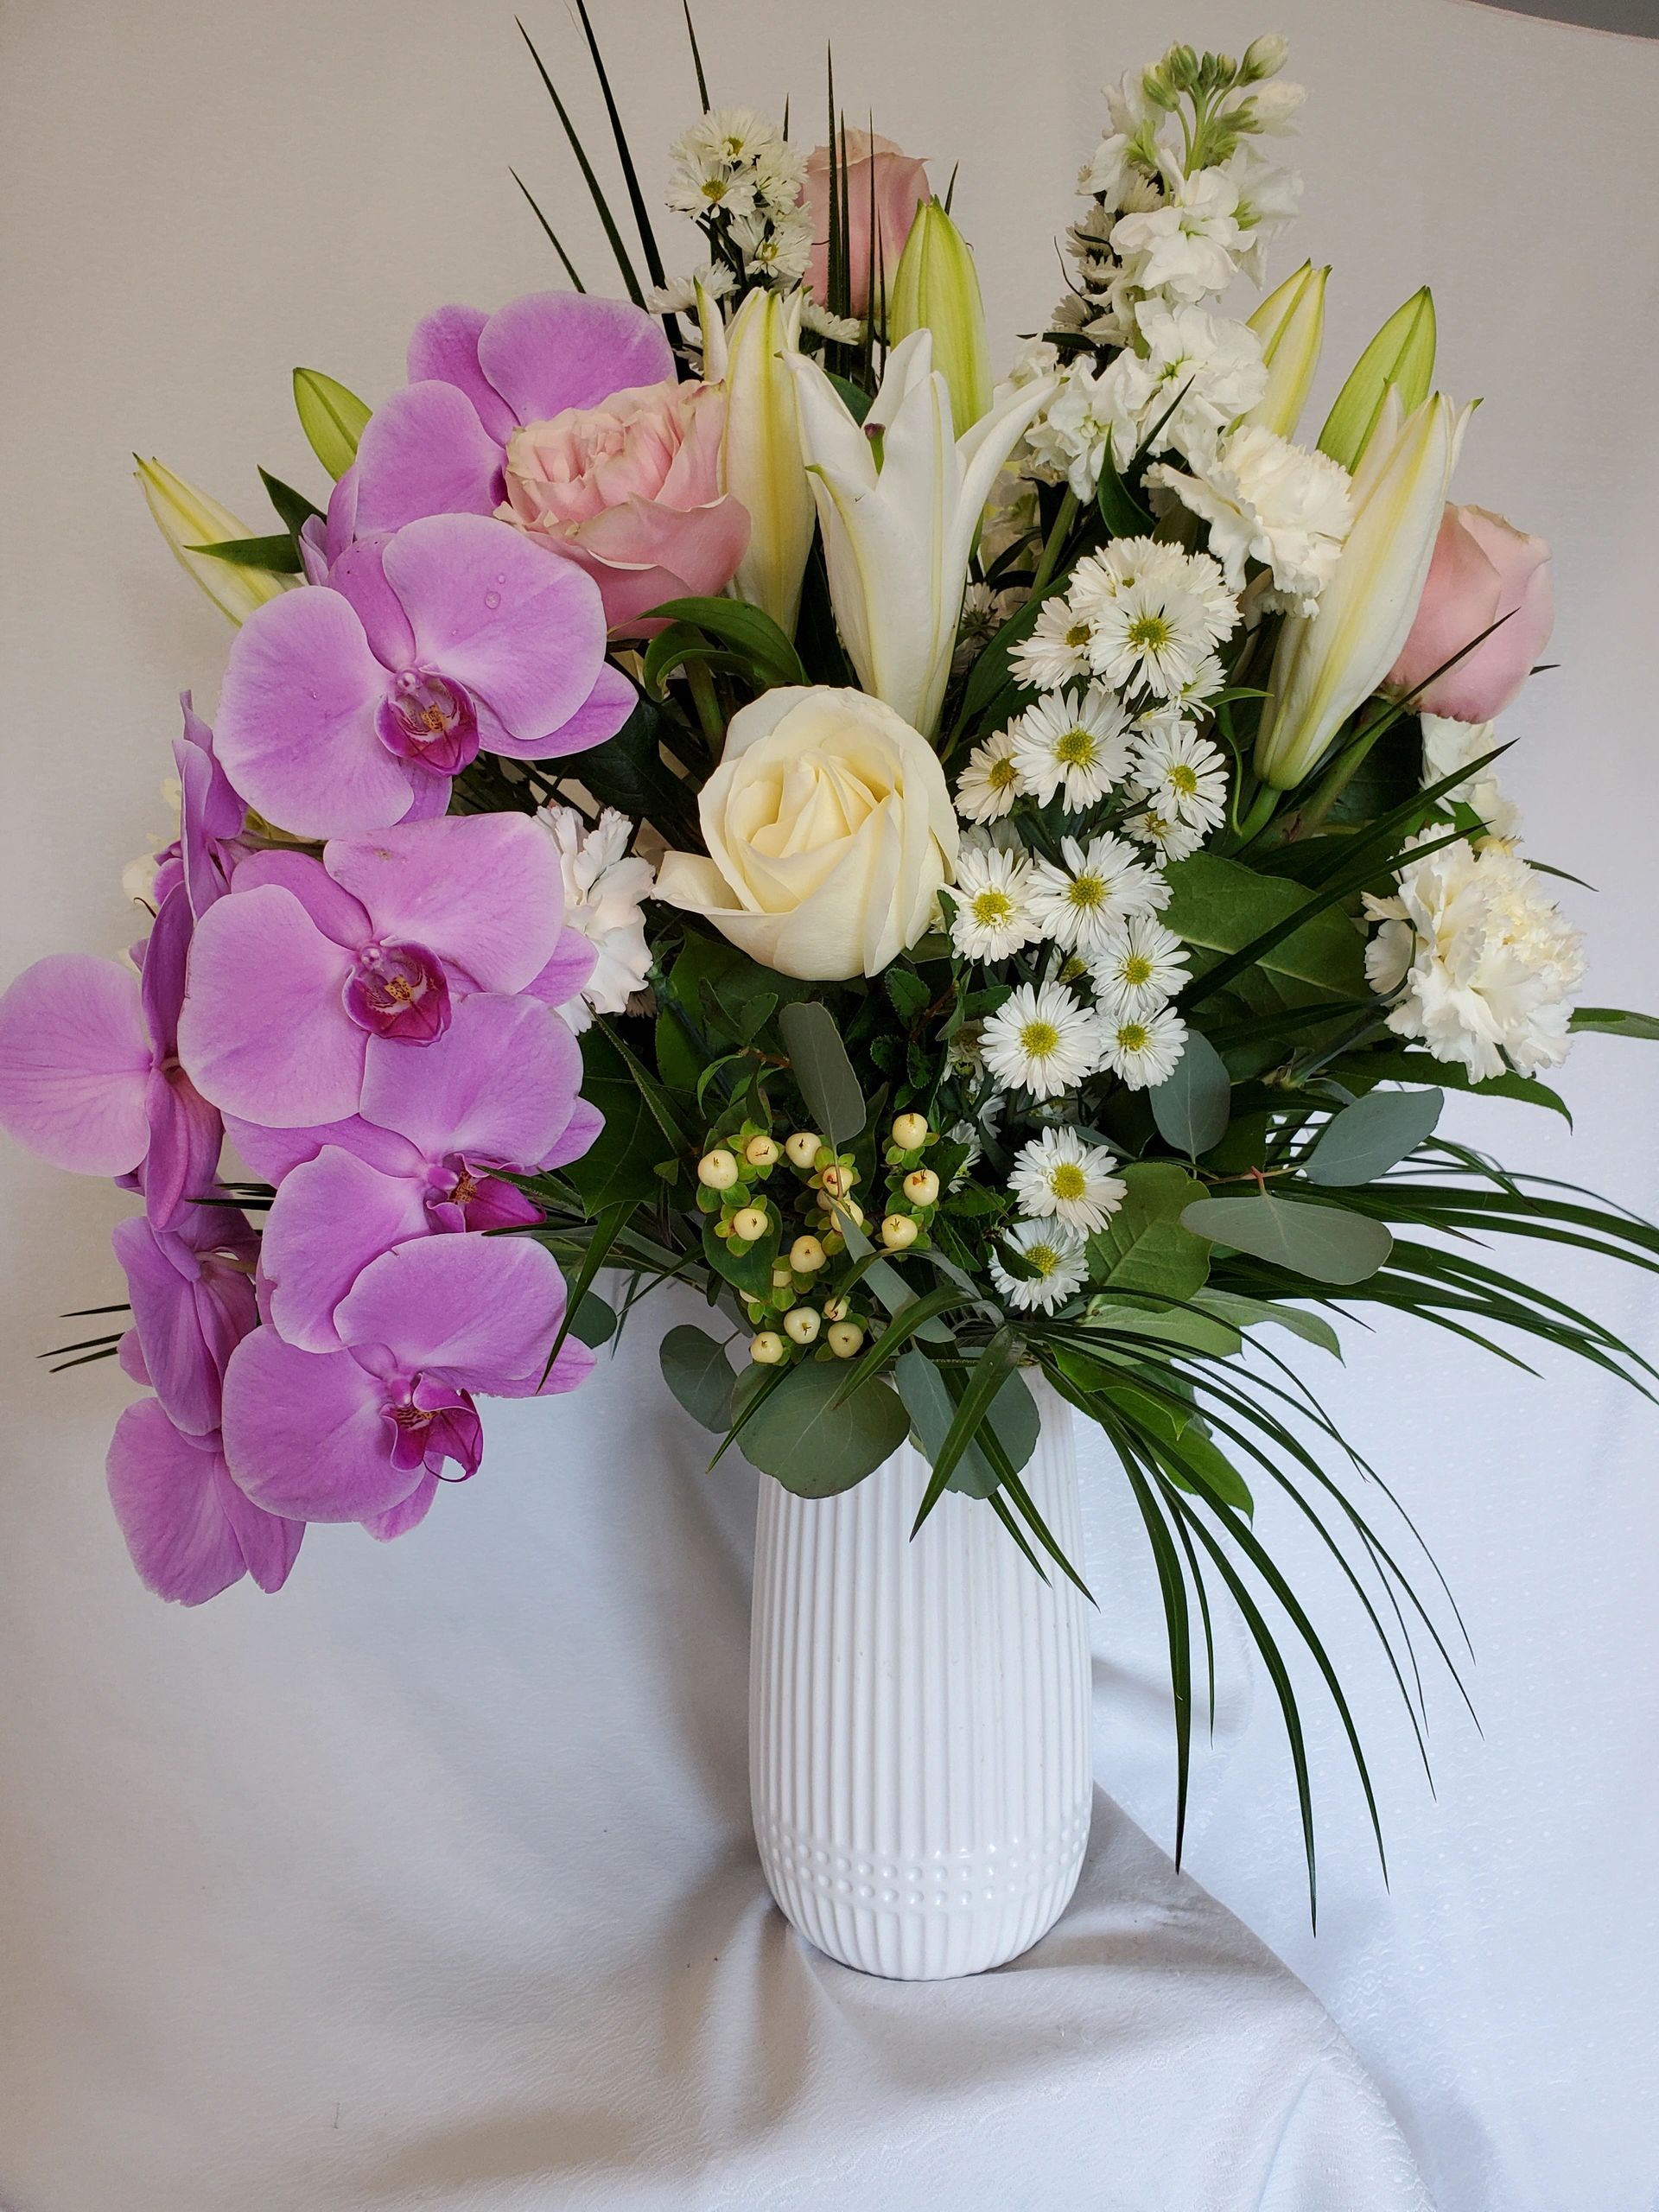 Elegant floral arrangement in white ceramic vase.